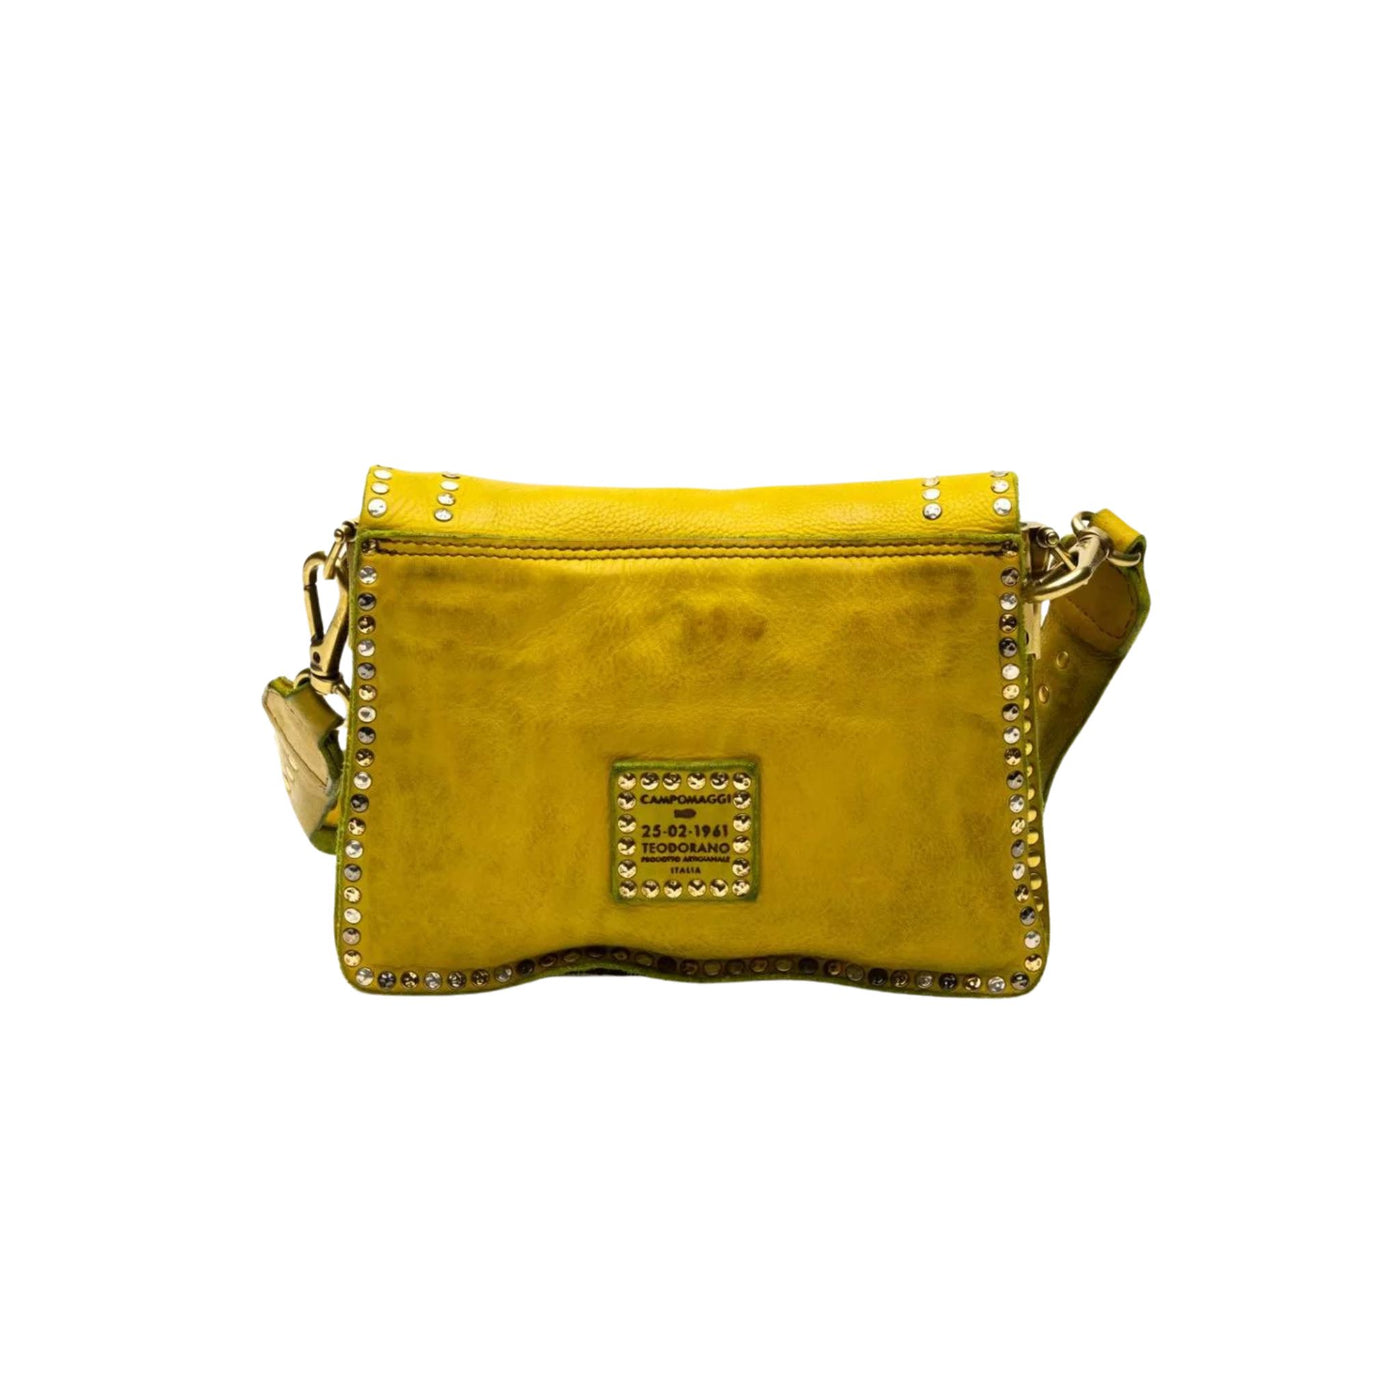 Borsa Donna in pelle monocolore con borchie decorative e tracolla rimovibile